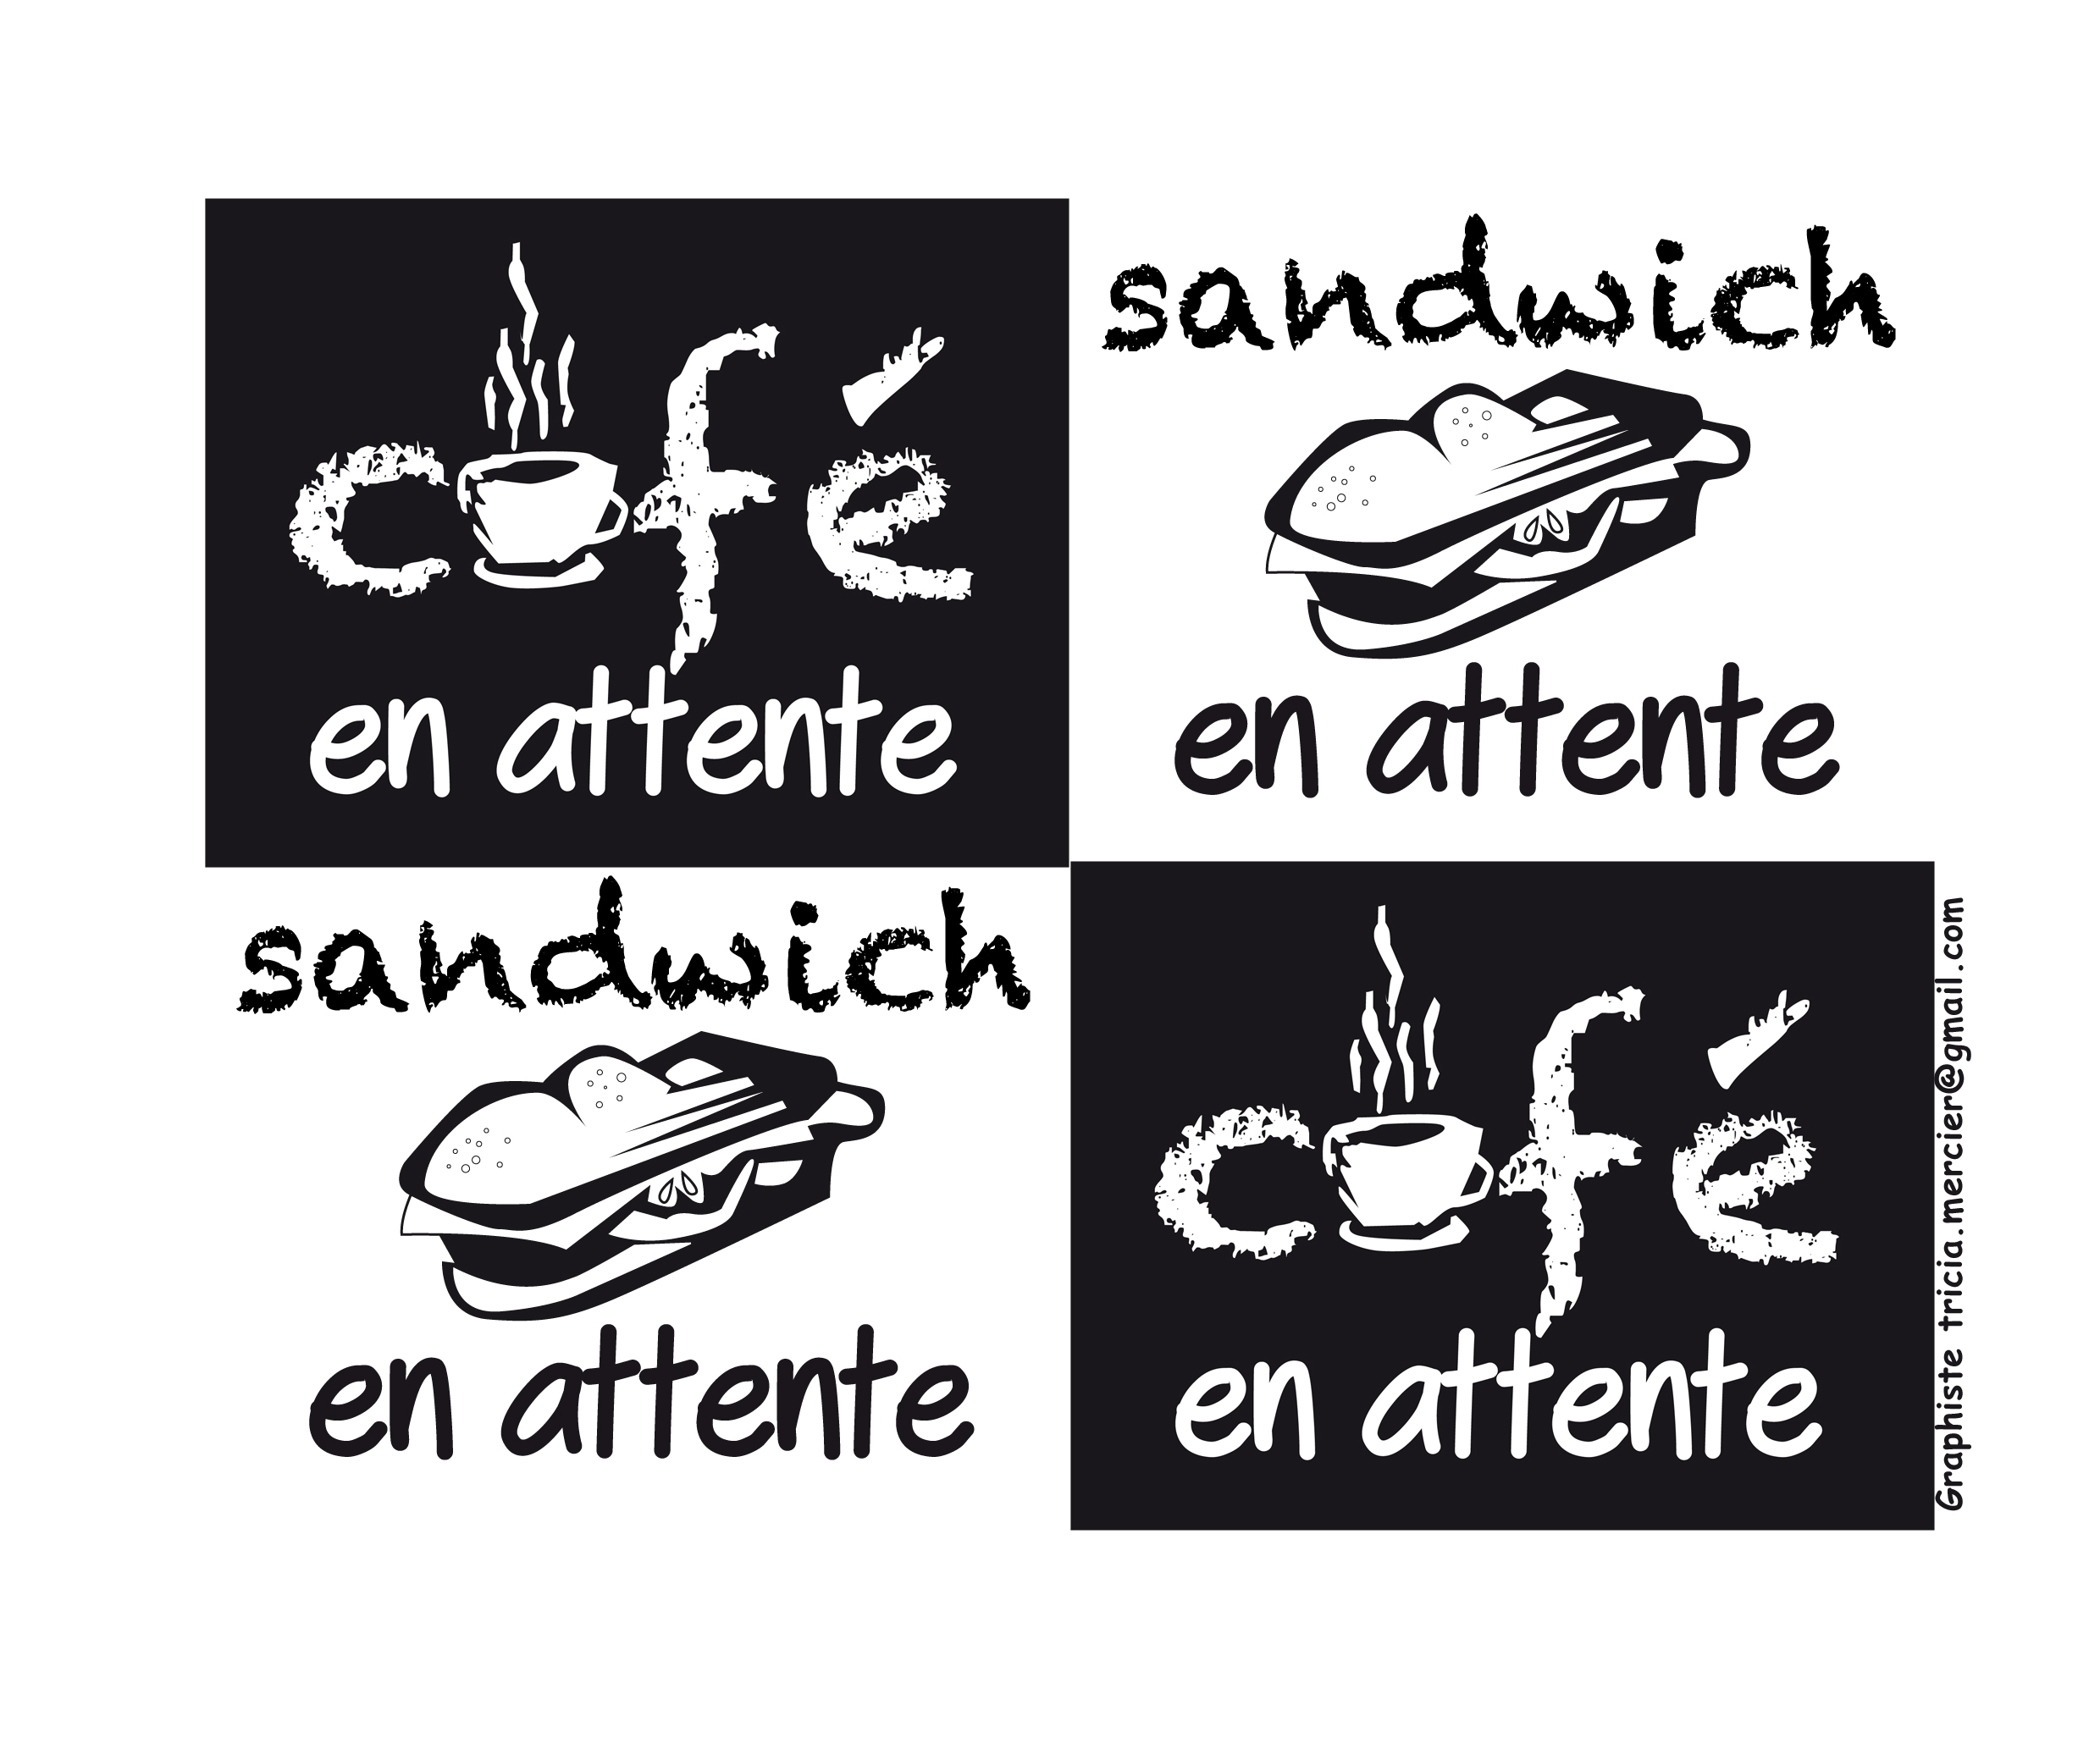 CDbi1mwHpvh_logo_cafe_en_attente_sandwich.jpg